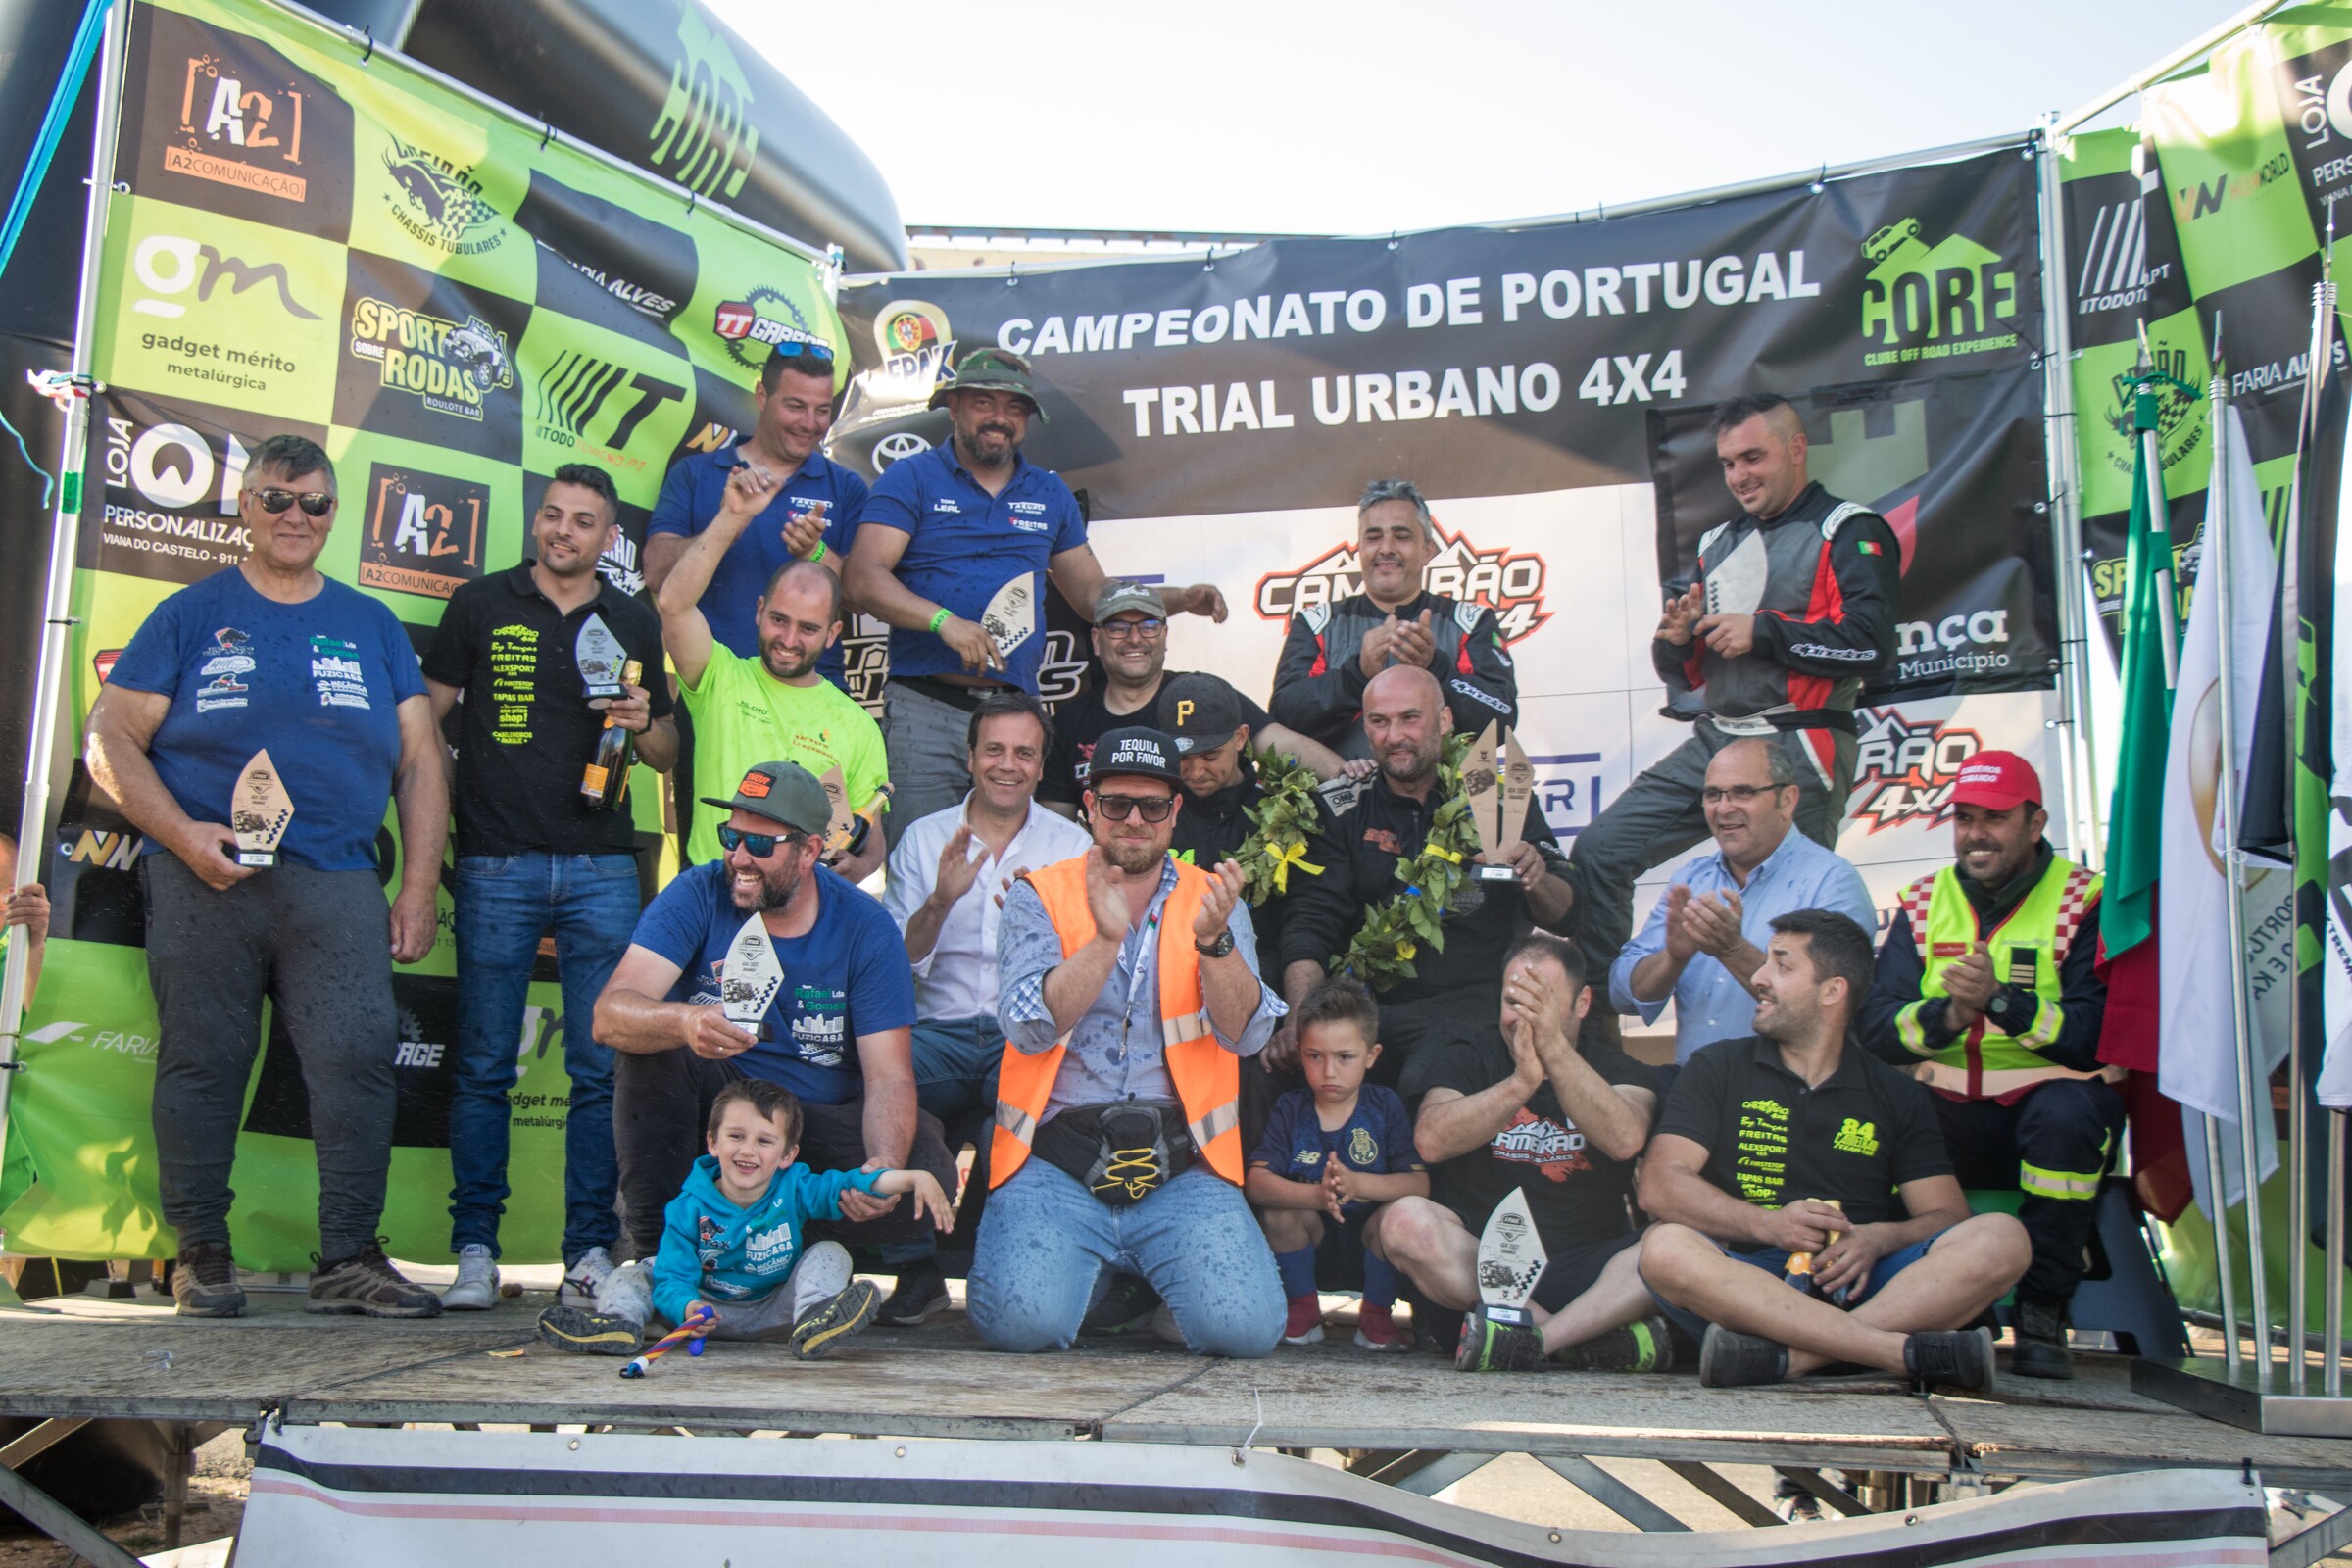 Campeonato de Portugal de Trial Urbano 4x4